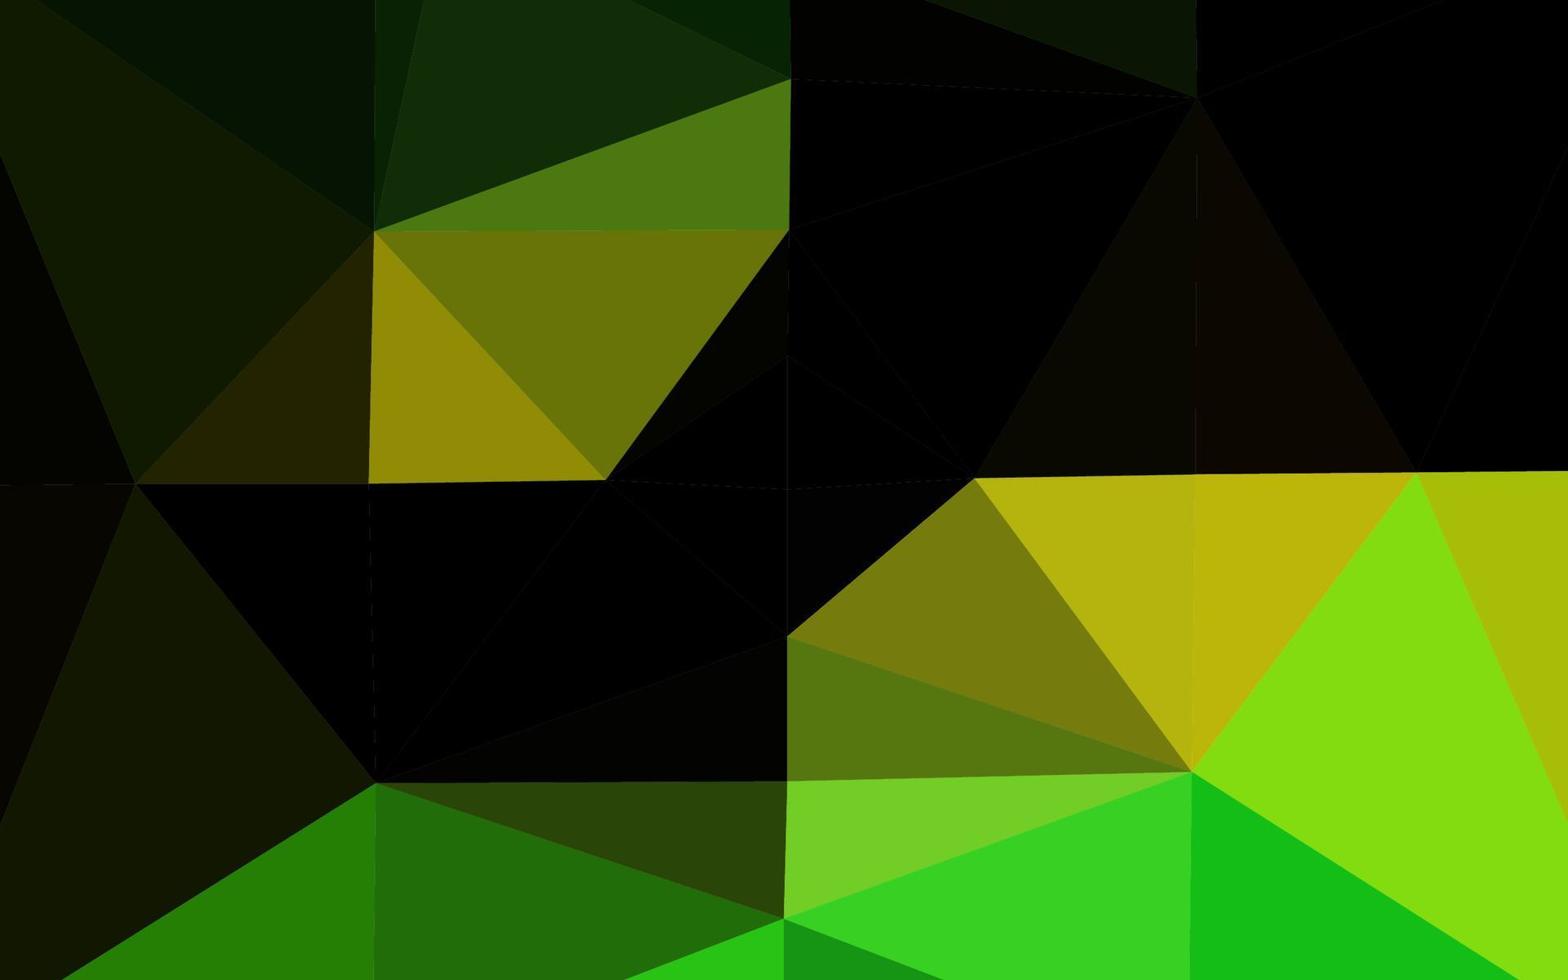 fond polygonale de vecteur vert foncé, jaune.